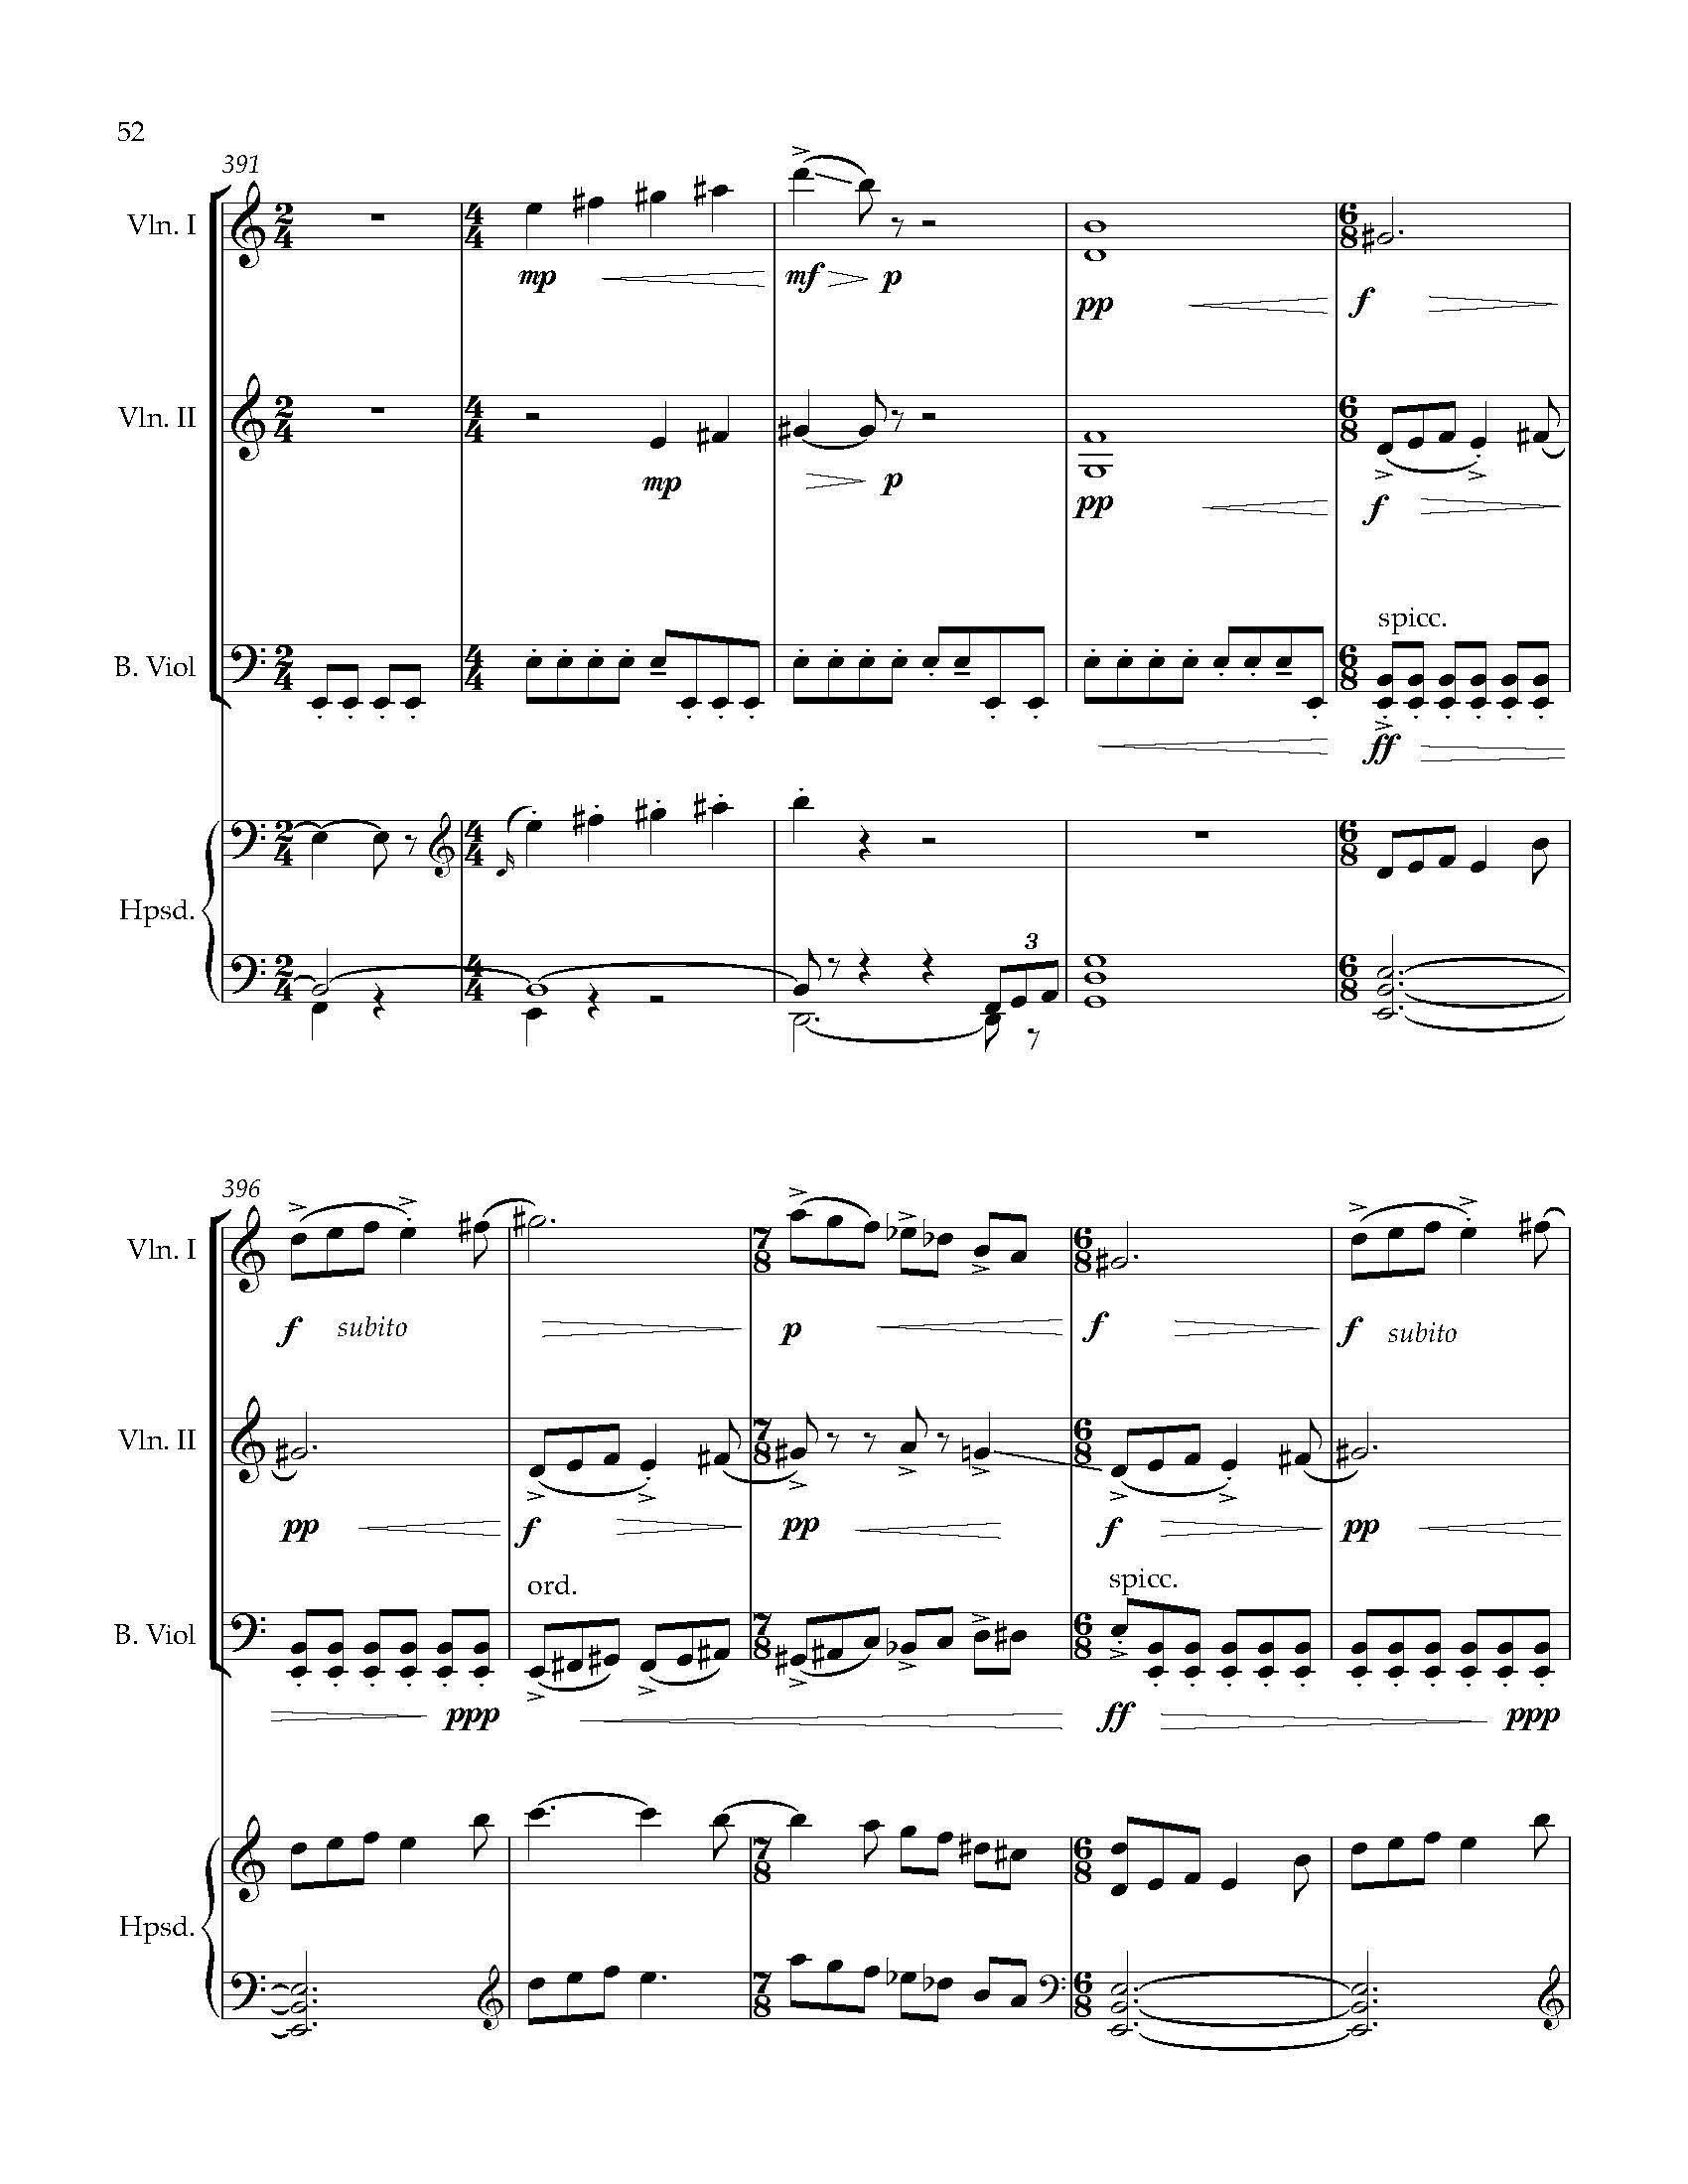 Sonata Sonare - Complete Score_Page_58.jpg